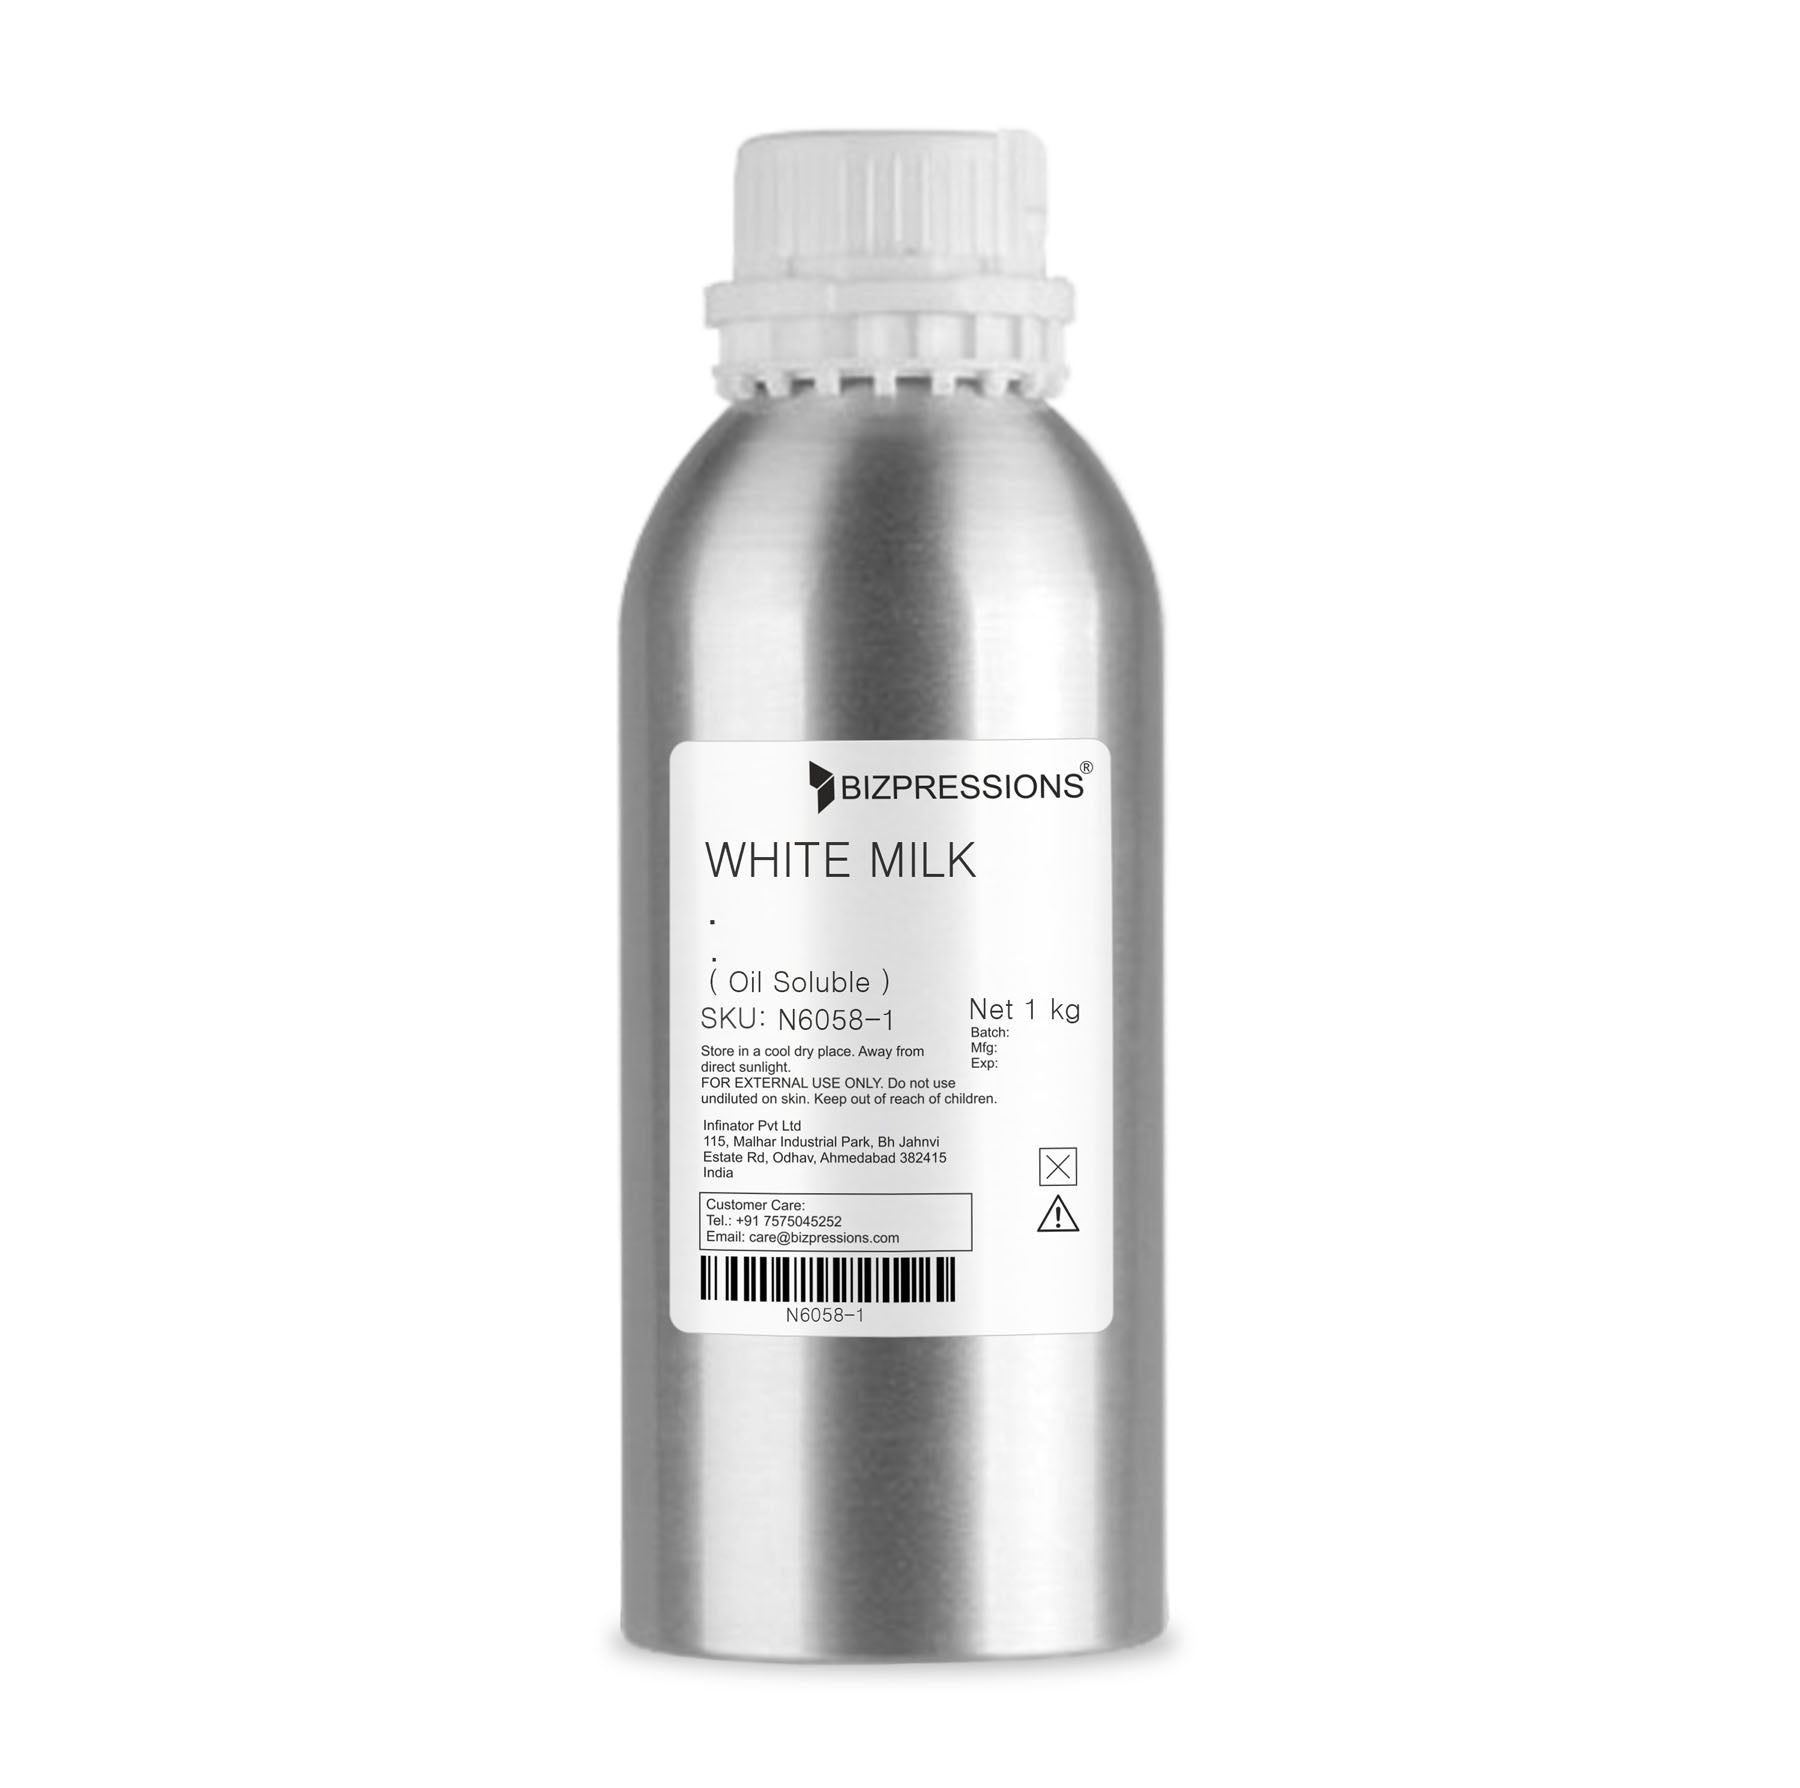 WHITE MILK - Fragrance ( Oil Soluble ) - 1 kg